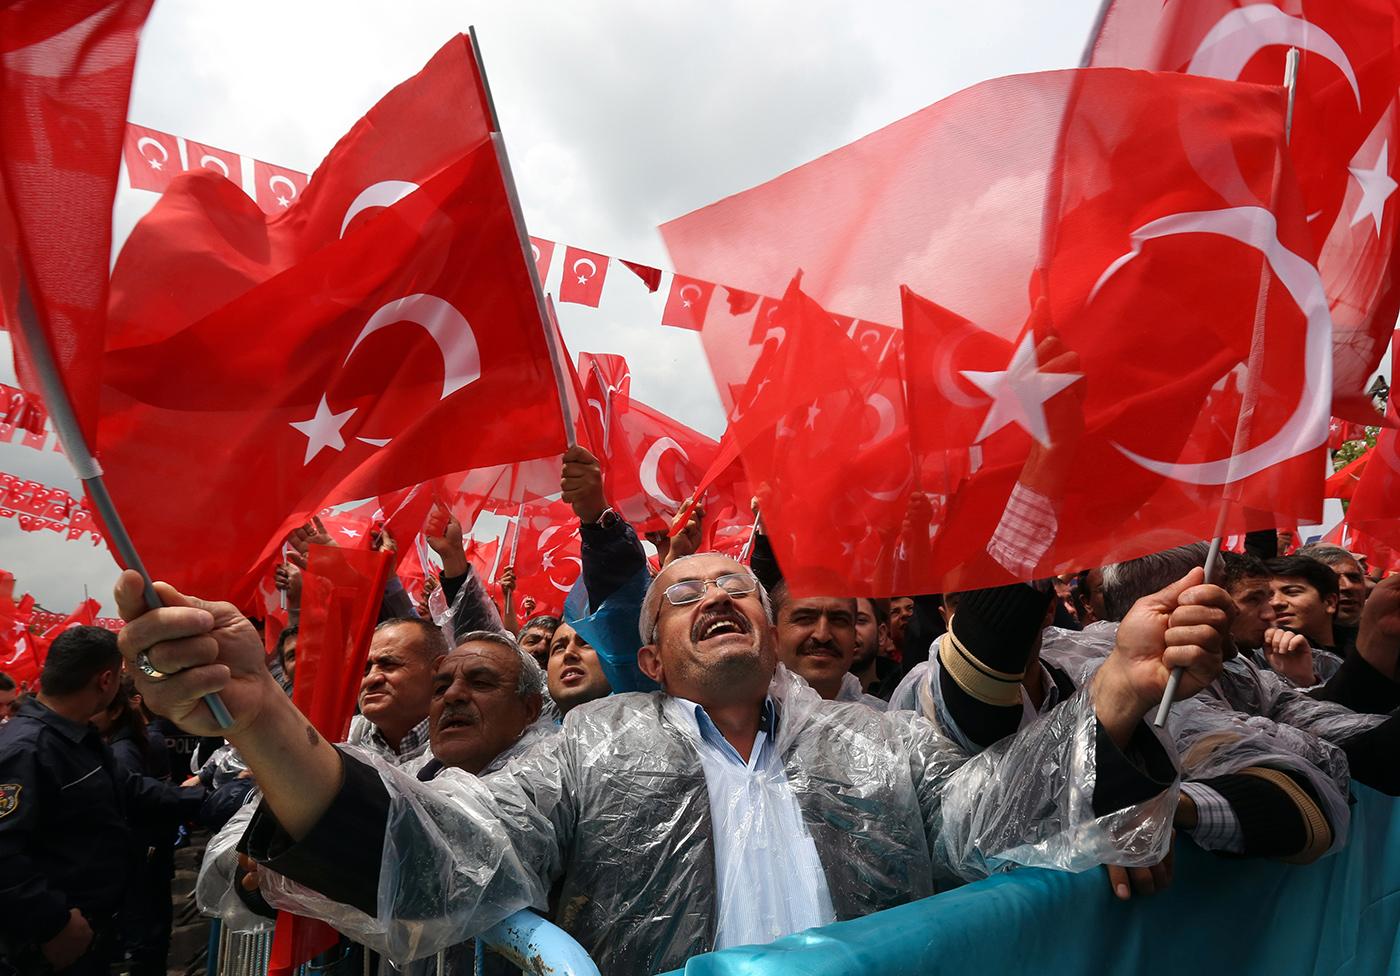 RÖSTAR I MORGON När de turkiska väljarna går till valurnorna i morgon borde de peka ut en ny kurs för sitt land. Då kan de bli en del av den europeiska framgångssagan och slippa falla tillbaka till en halvdemokrati.